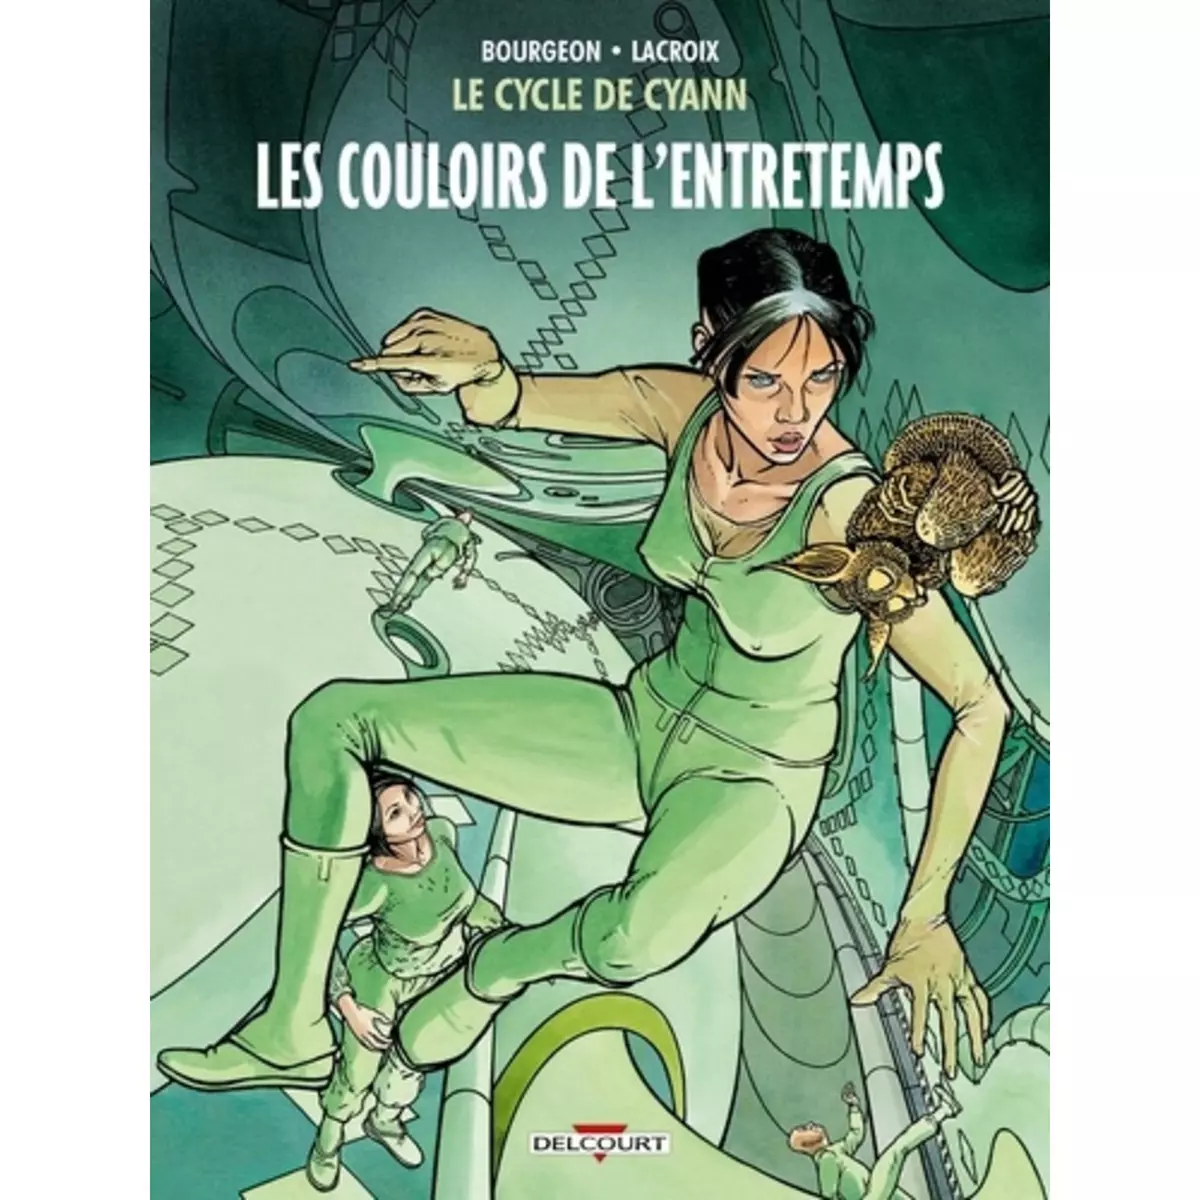  LE CYCLE DE CYANN TOME 5 : LES COULOIRS DE L'ENTRETEMPS, Bourgeon François